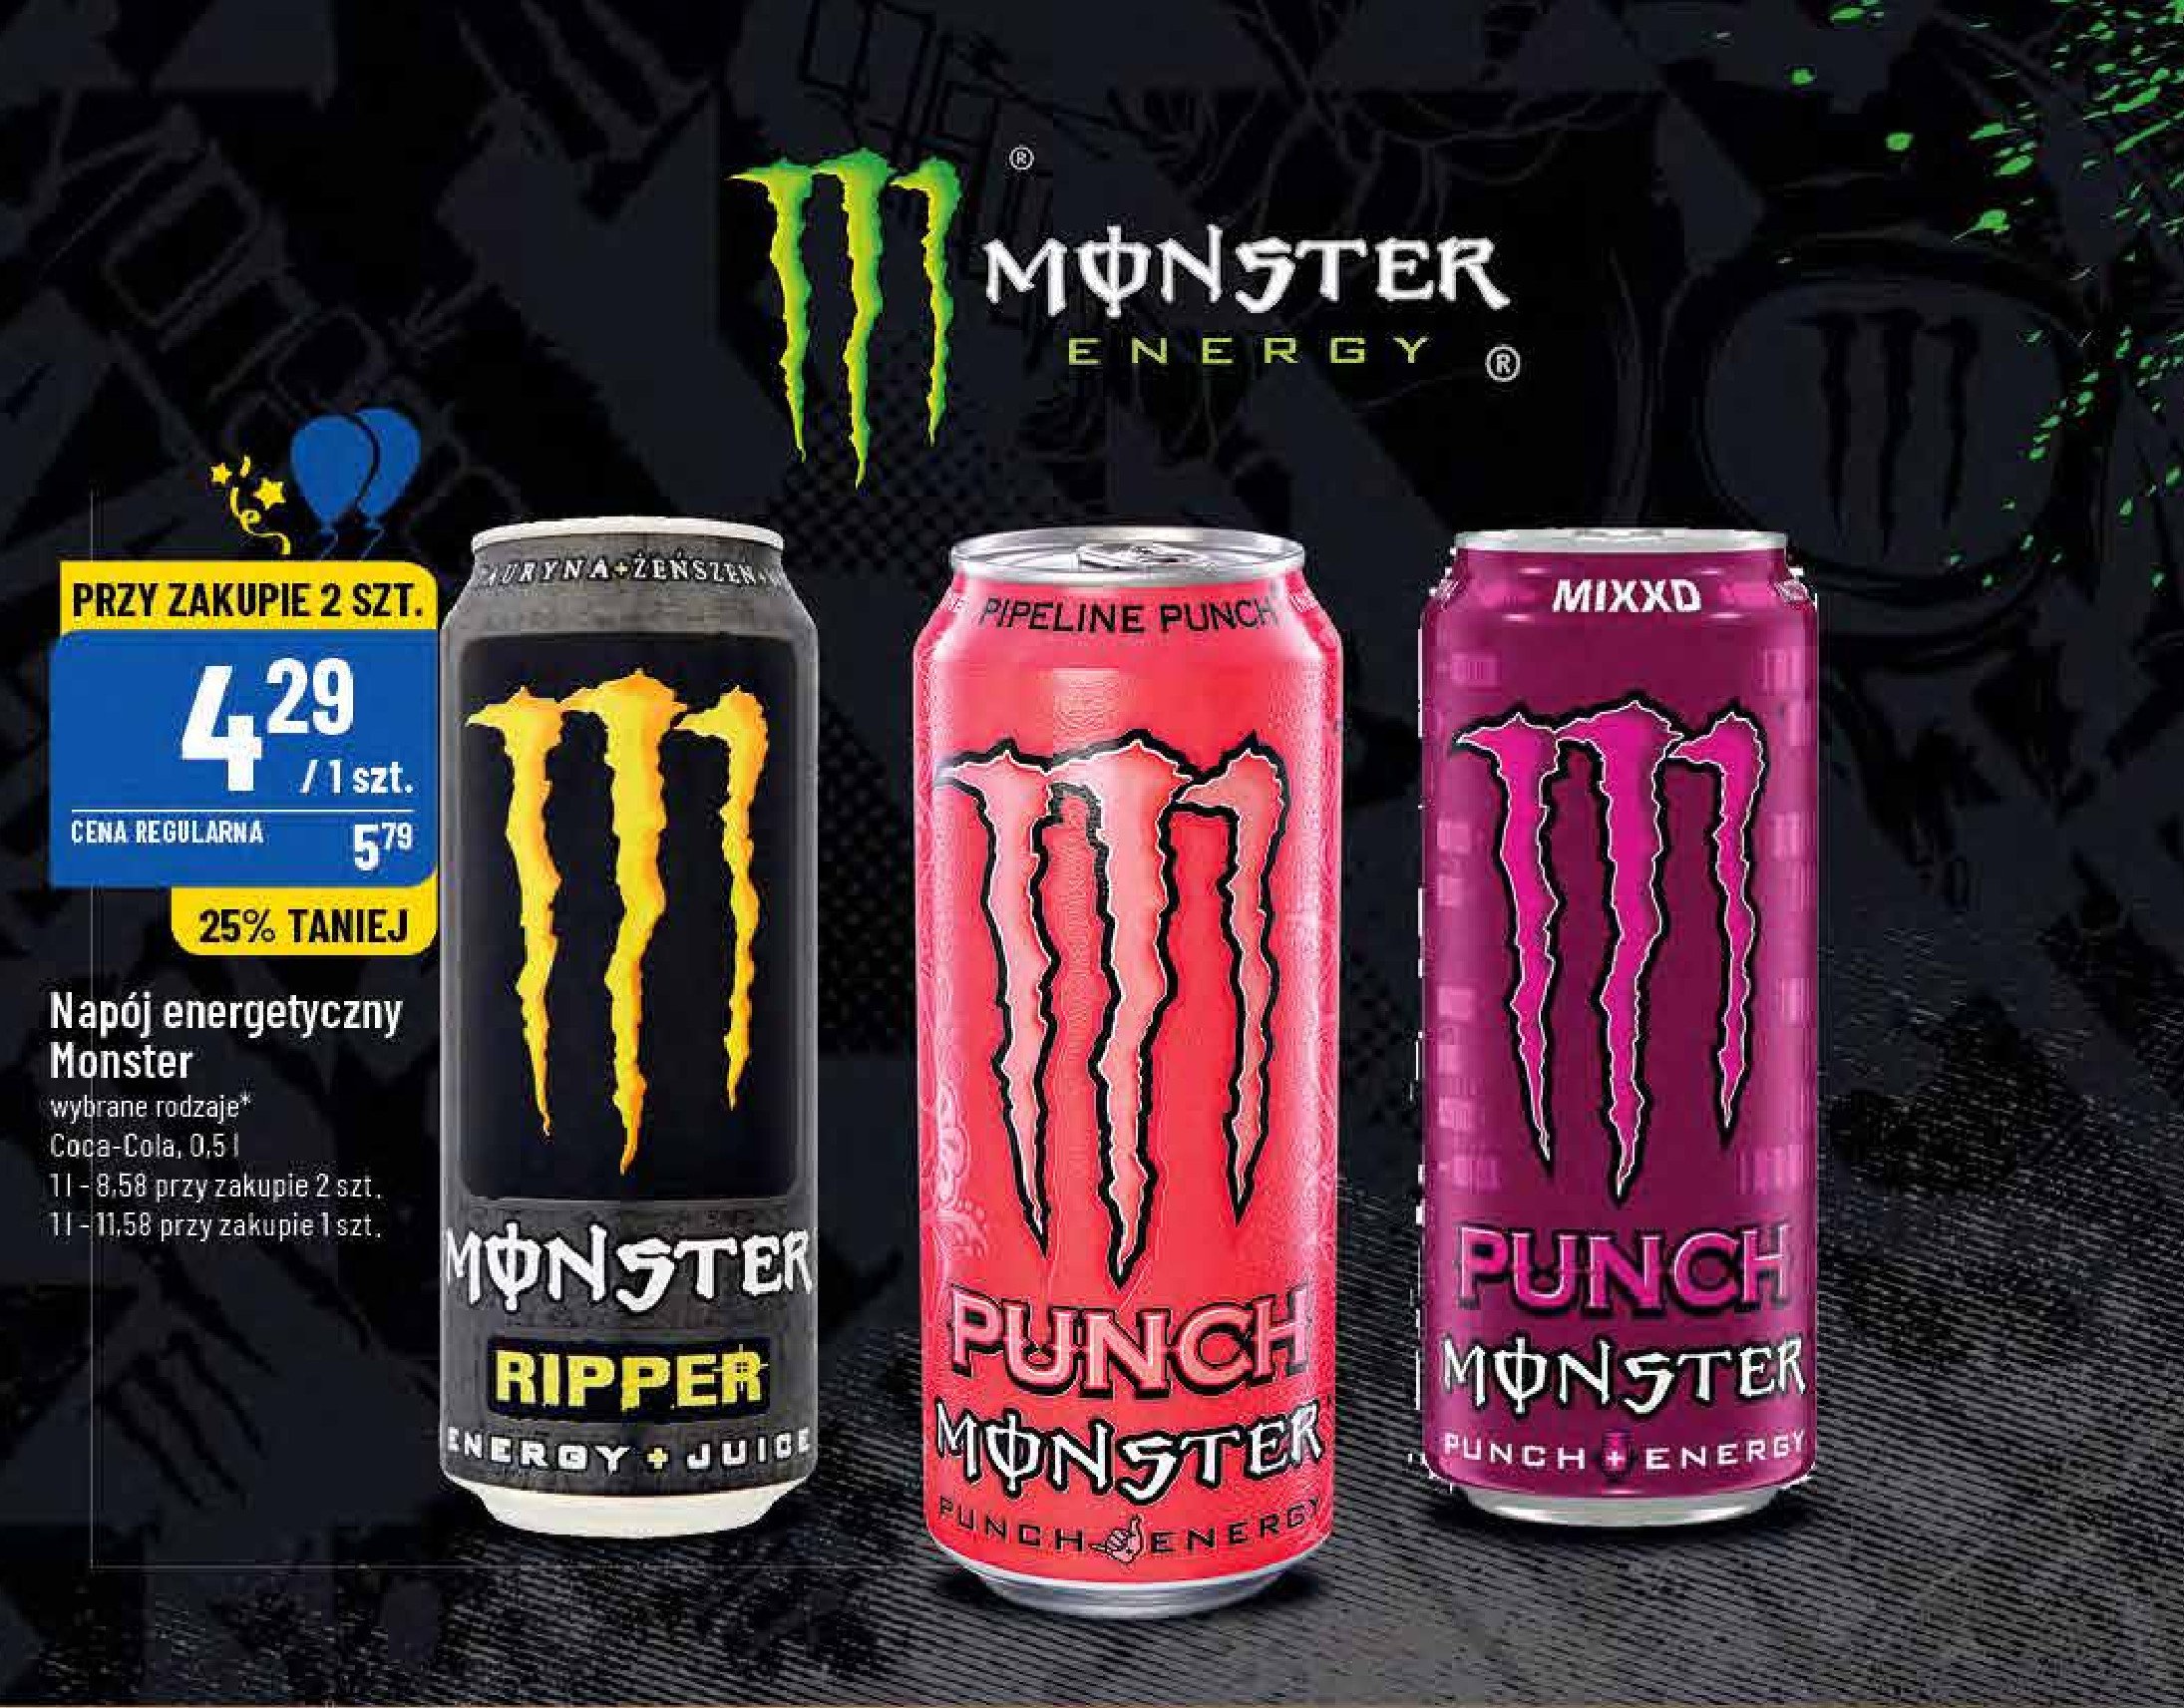 Napój energetyczny Monster energy ripper promocje